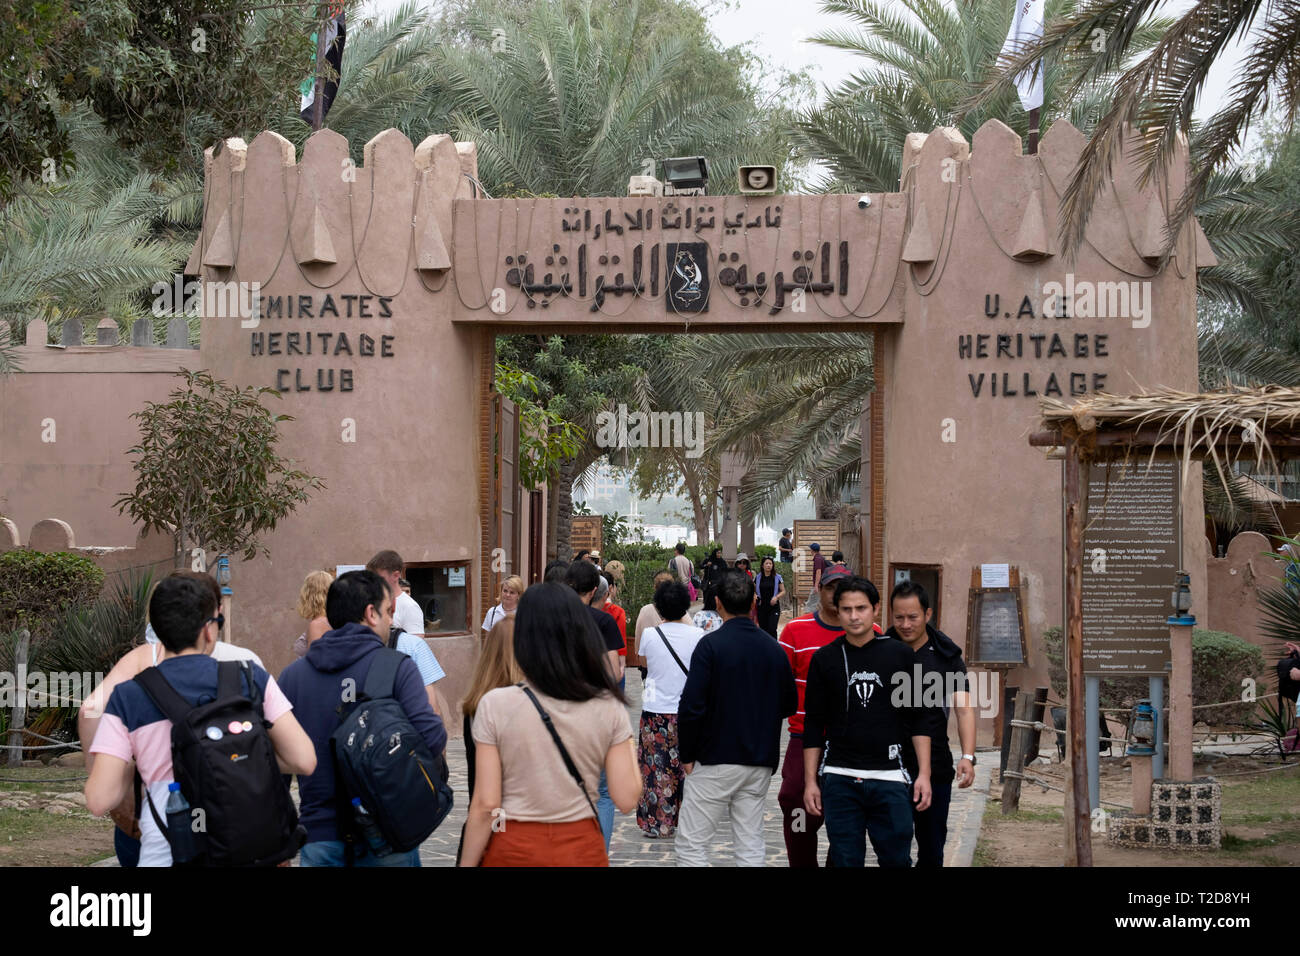 Vae-Emirate Heritage Heritage Village Club, Abu Dhabi, Vereinigte Arabische Emirate Stockfoto